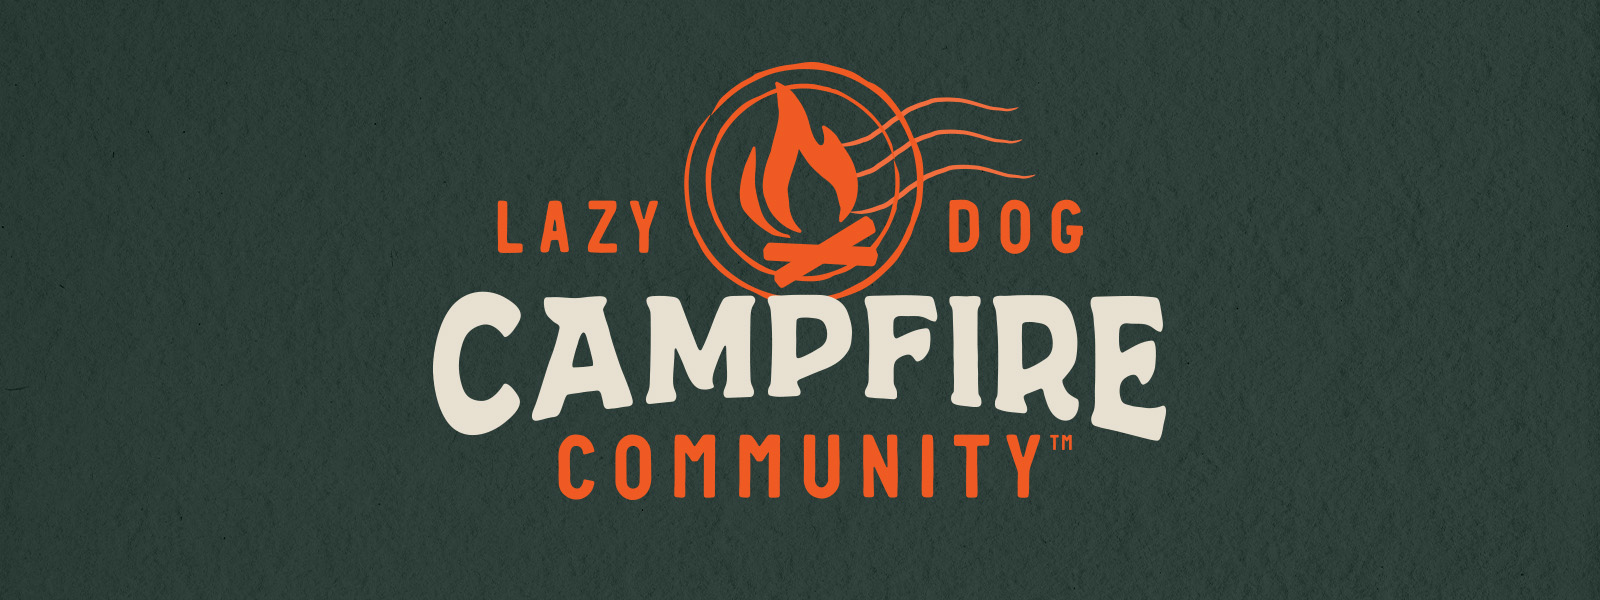 Lazy Dog Campfire Community